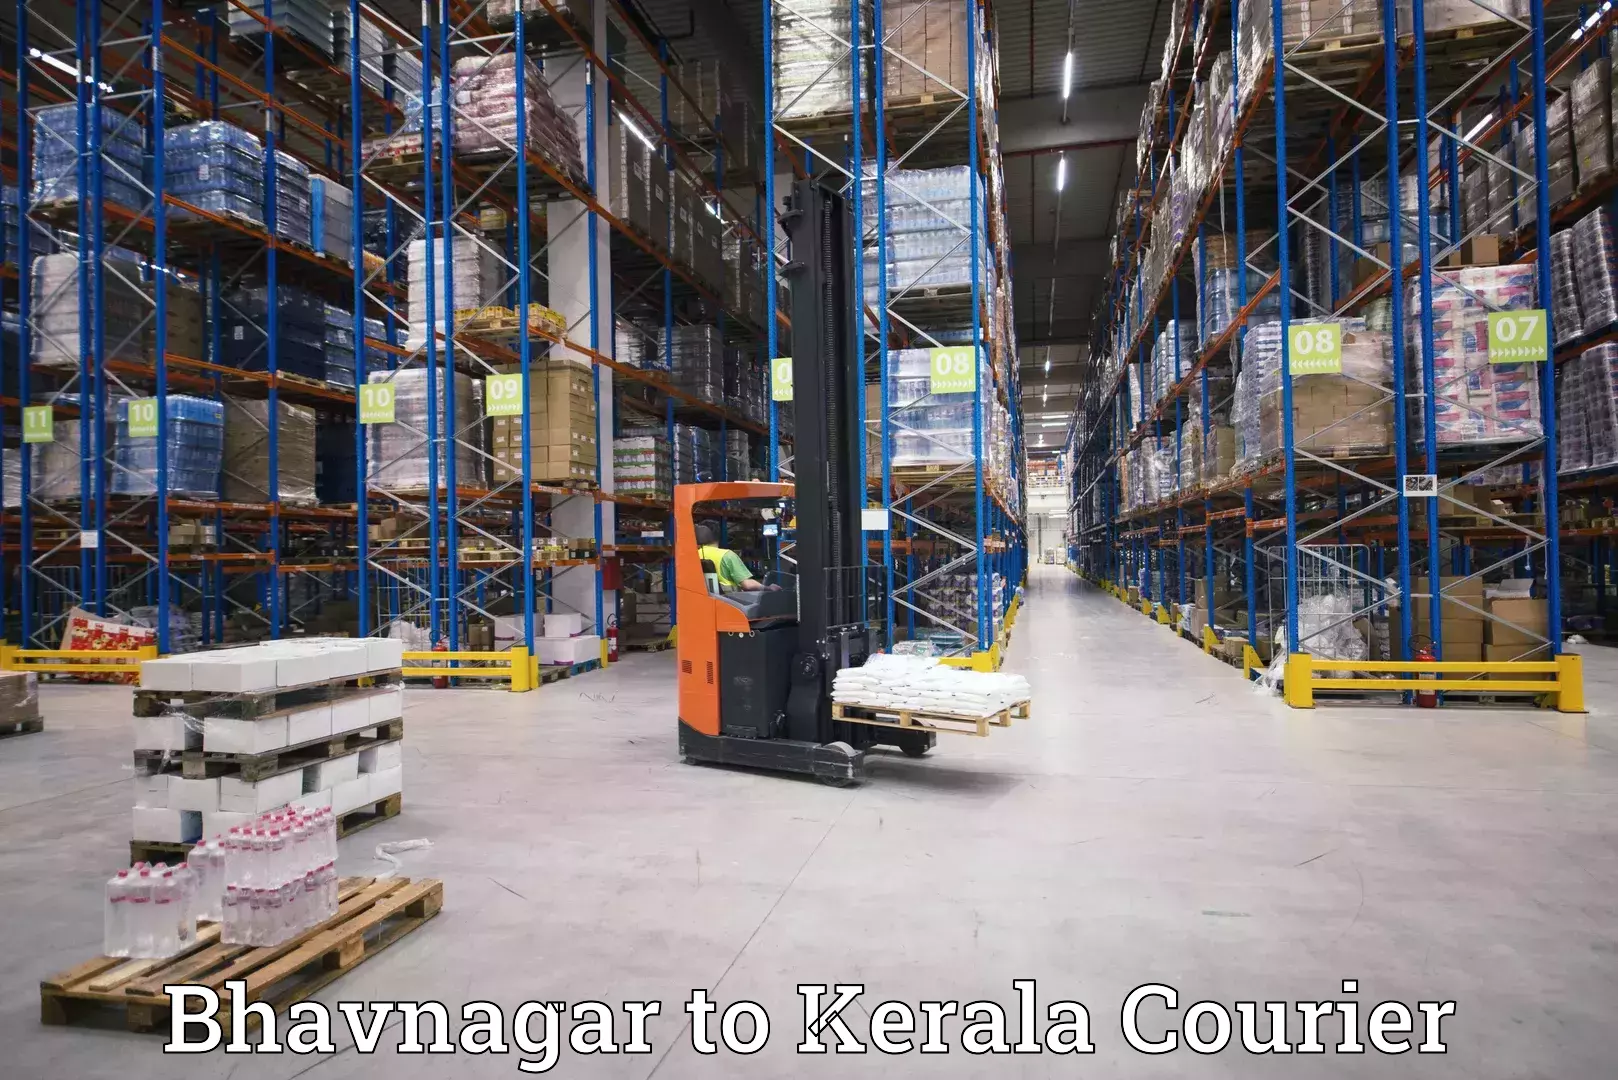 Next-day freight services in Bhavnagar to Thiruvananthapuram